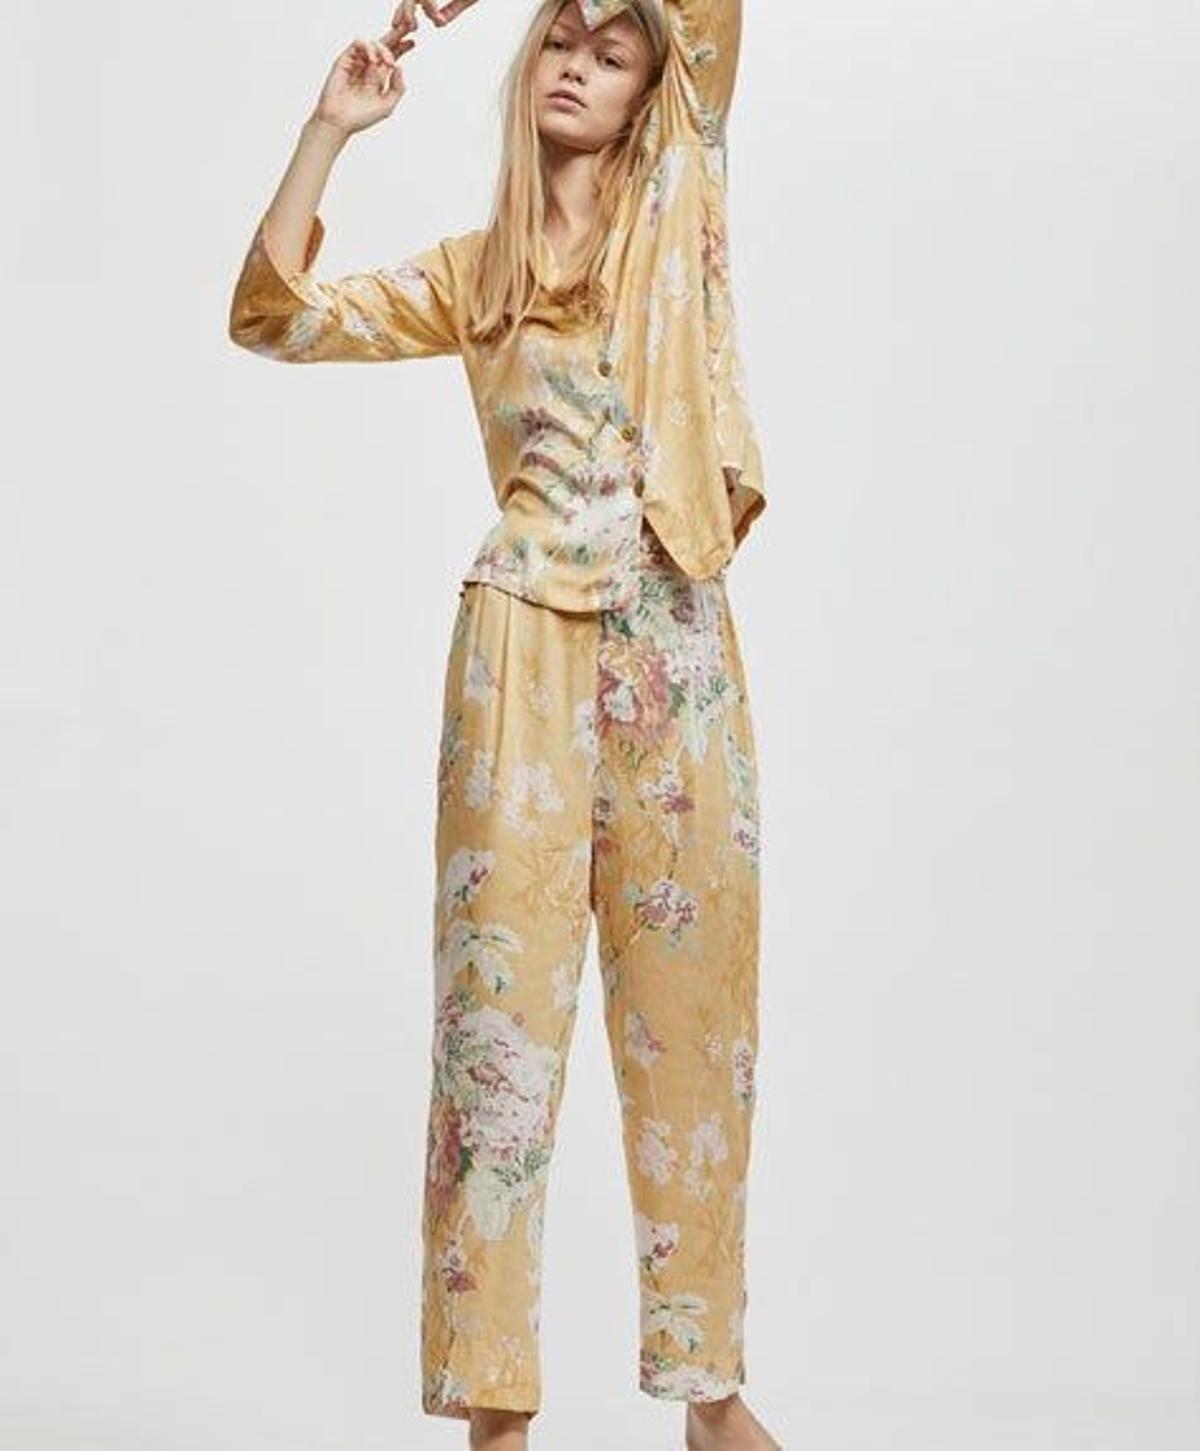 Pijama de cretona con estampado floral de Oysho. (Precio: 40,98 euros)